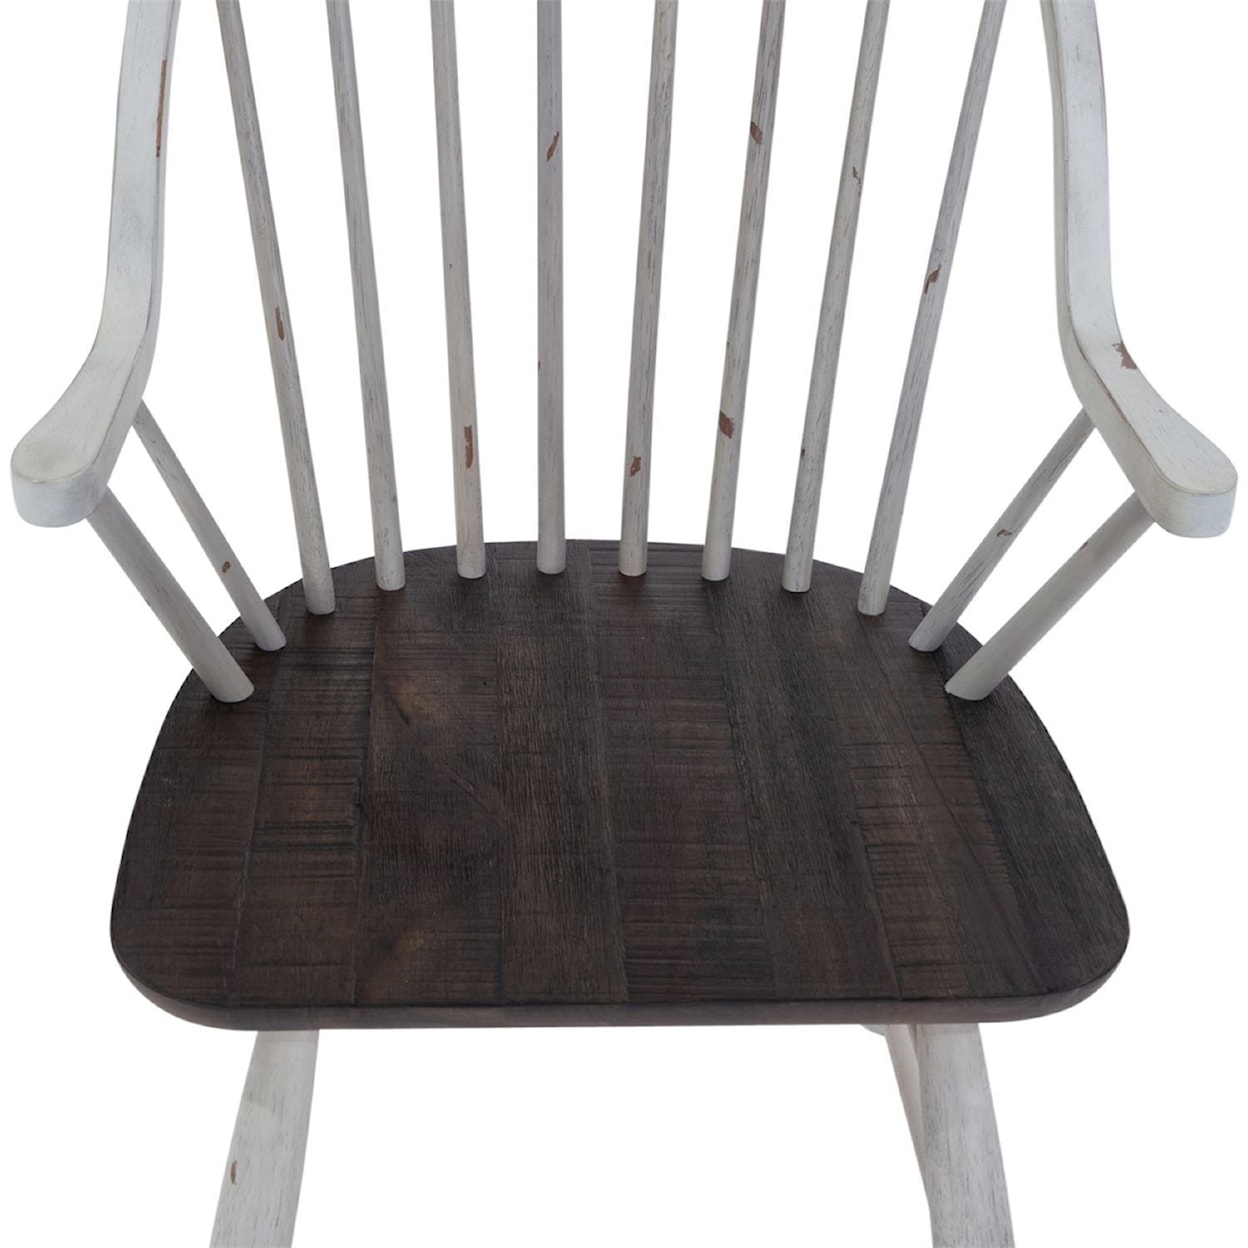 Liberty Furniture Farmhouse Arm Chair